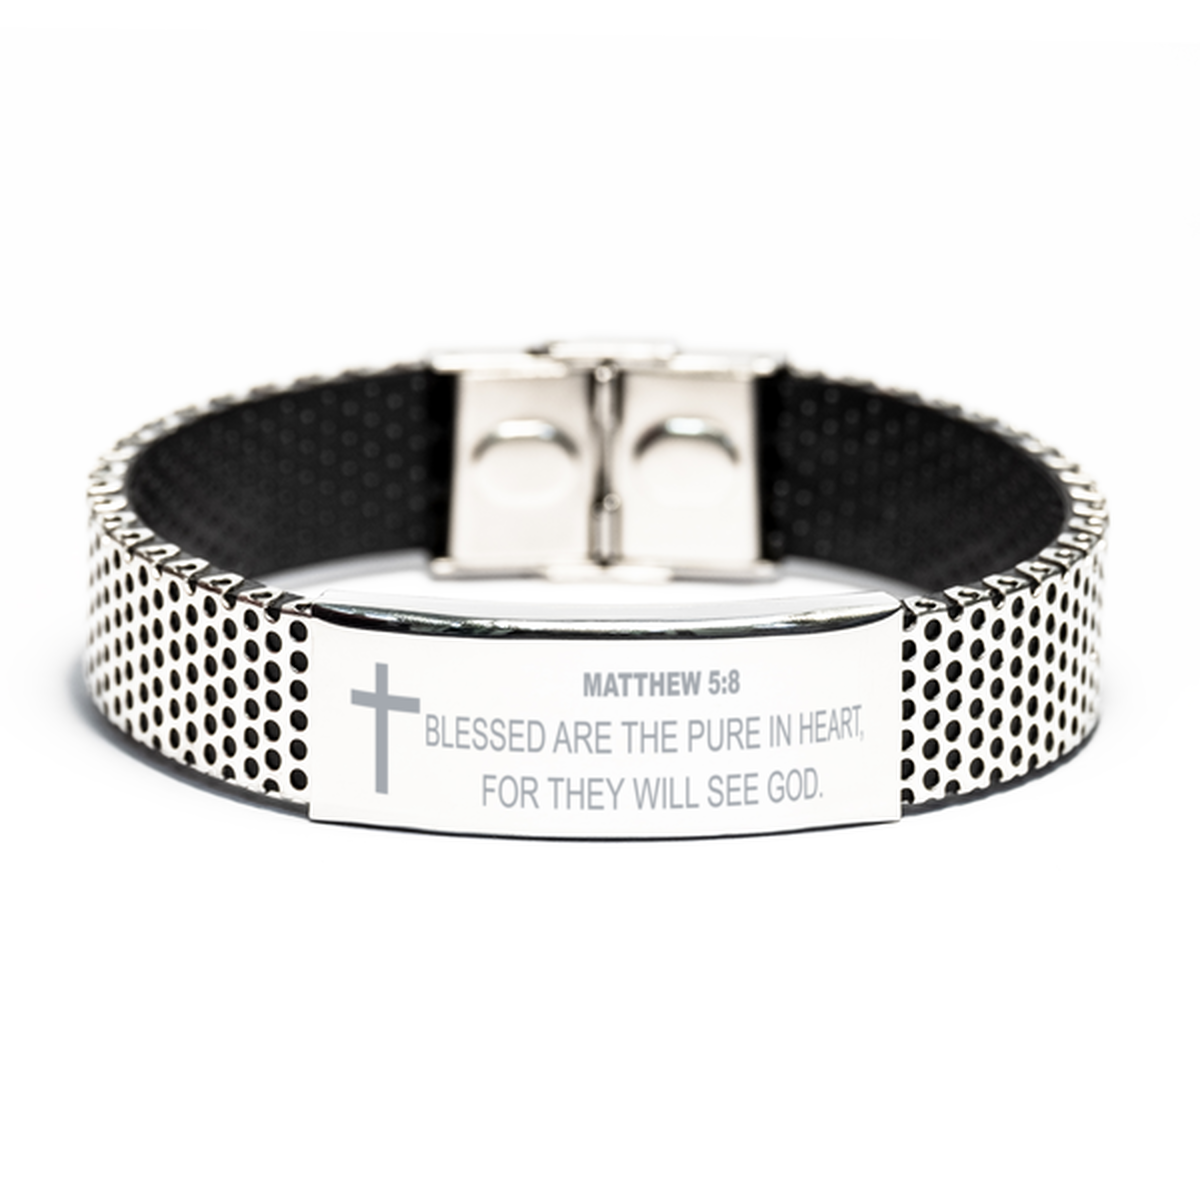 Matthew 5 8 Bracelet, Bible Verse Bracelet, Christian Bracelet, Christian Birthday Gift, Stainless Steel Bracelet, Gift for Christian.